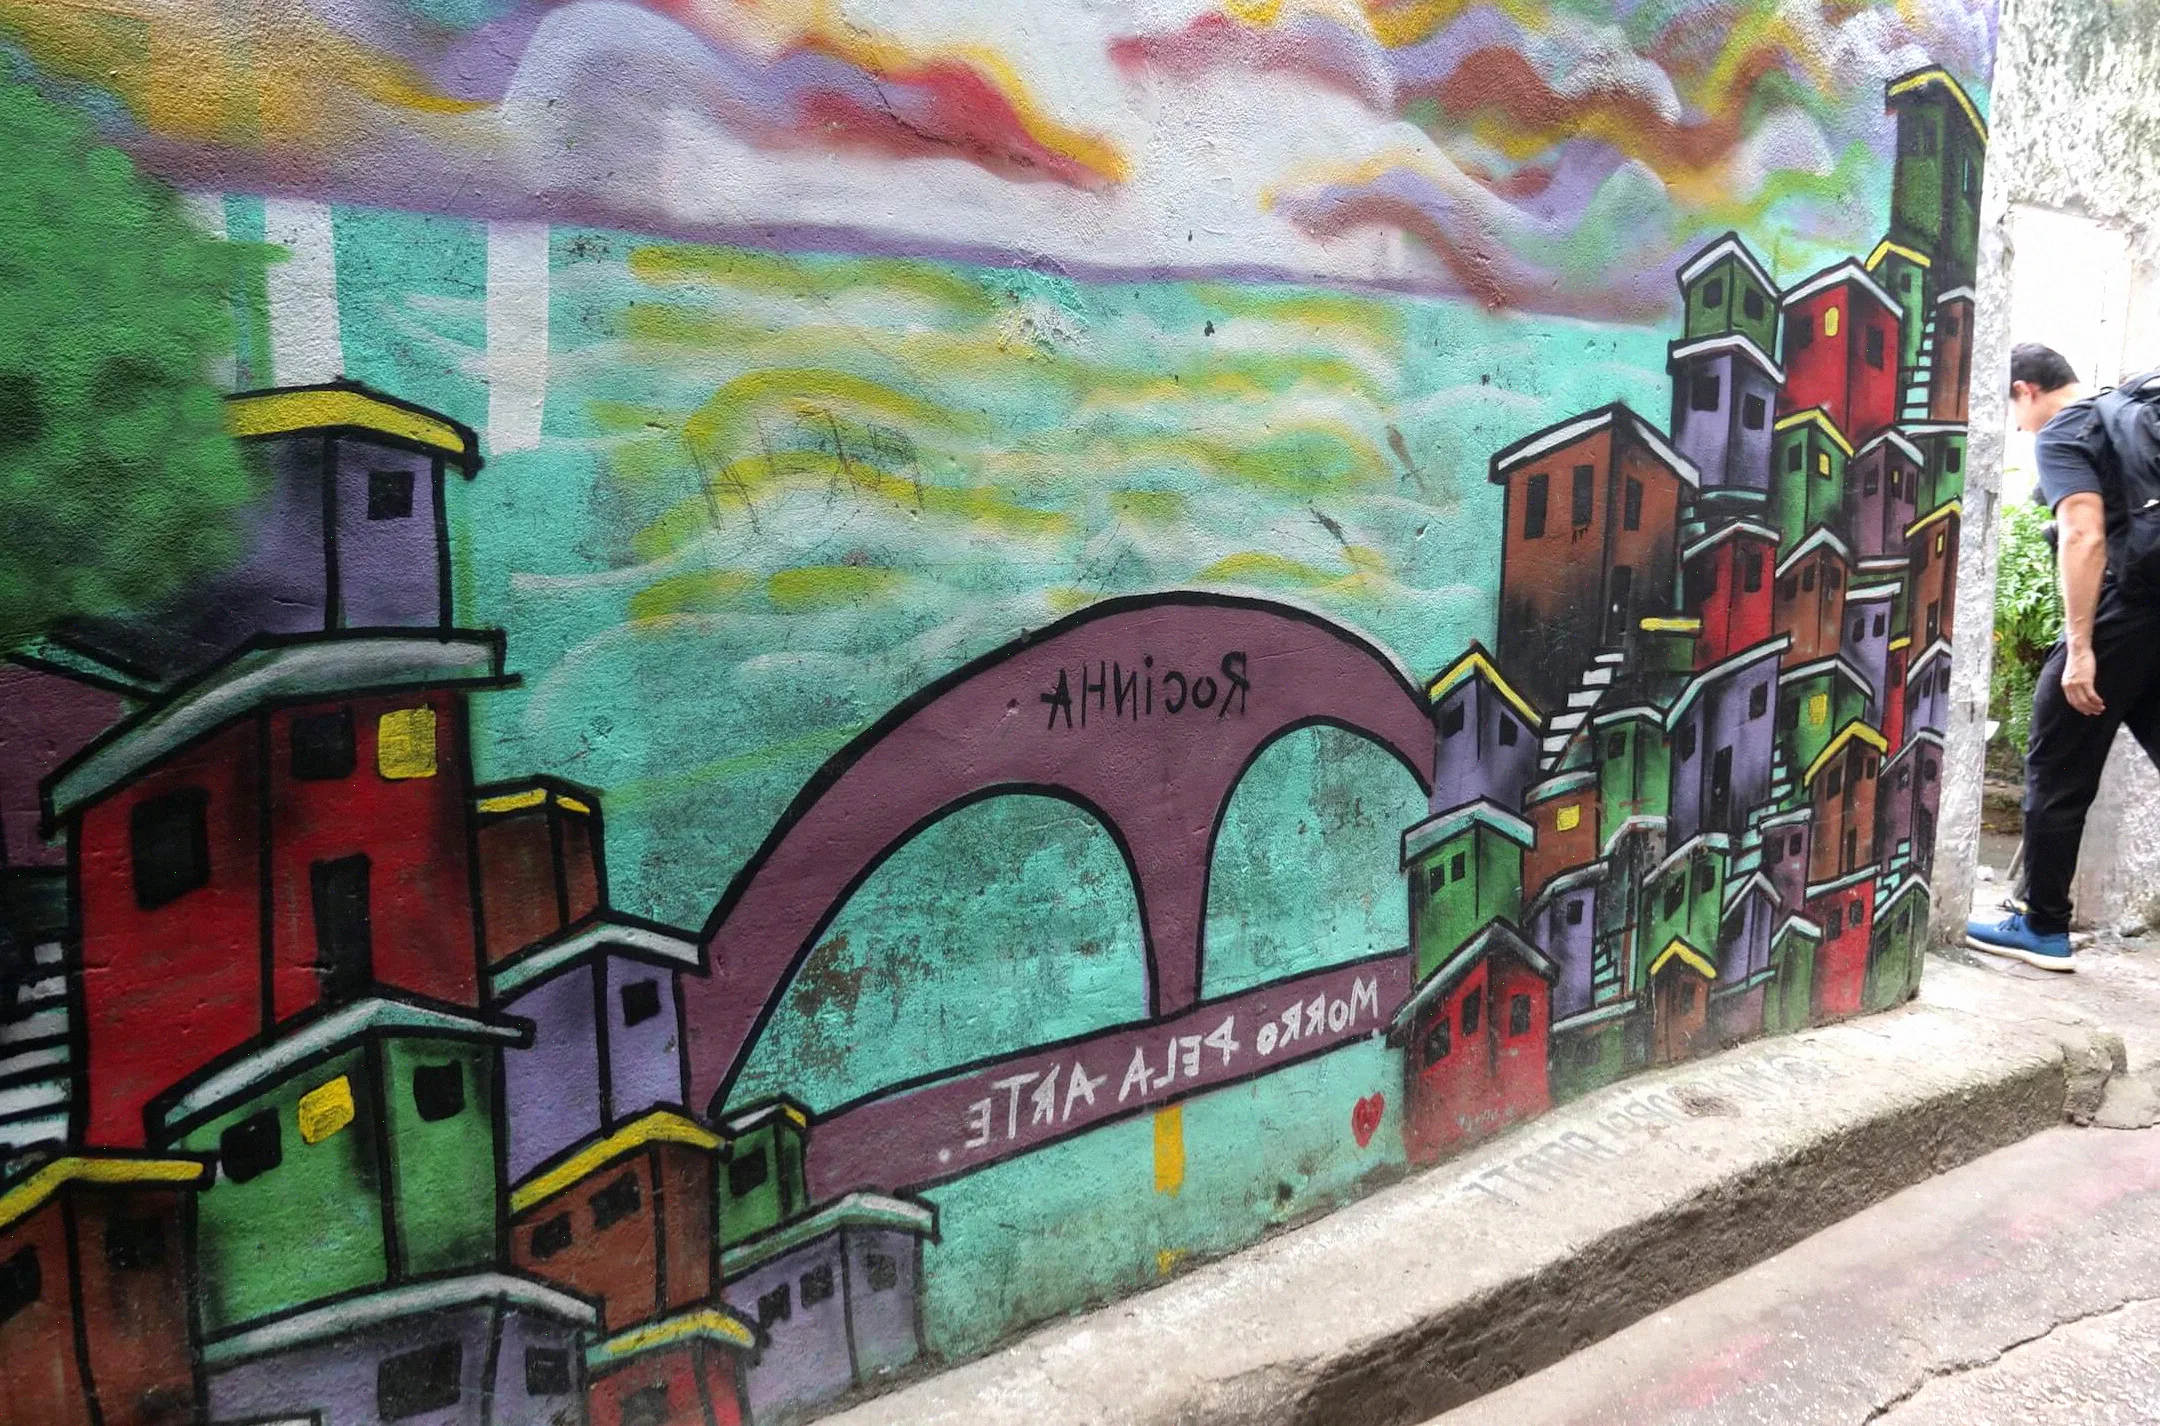 Mira las siguientes fotos para ver la Puerta del Cielo. Esta foto muestra algunas obras de arte que representan la entrada a la propia favela de Rocinha, visibles en la distancia muy por debajo.